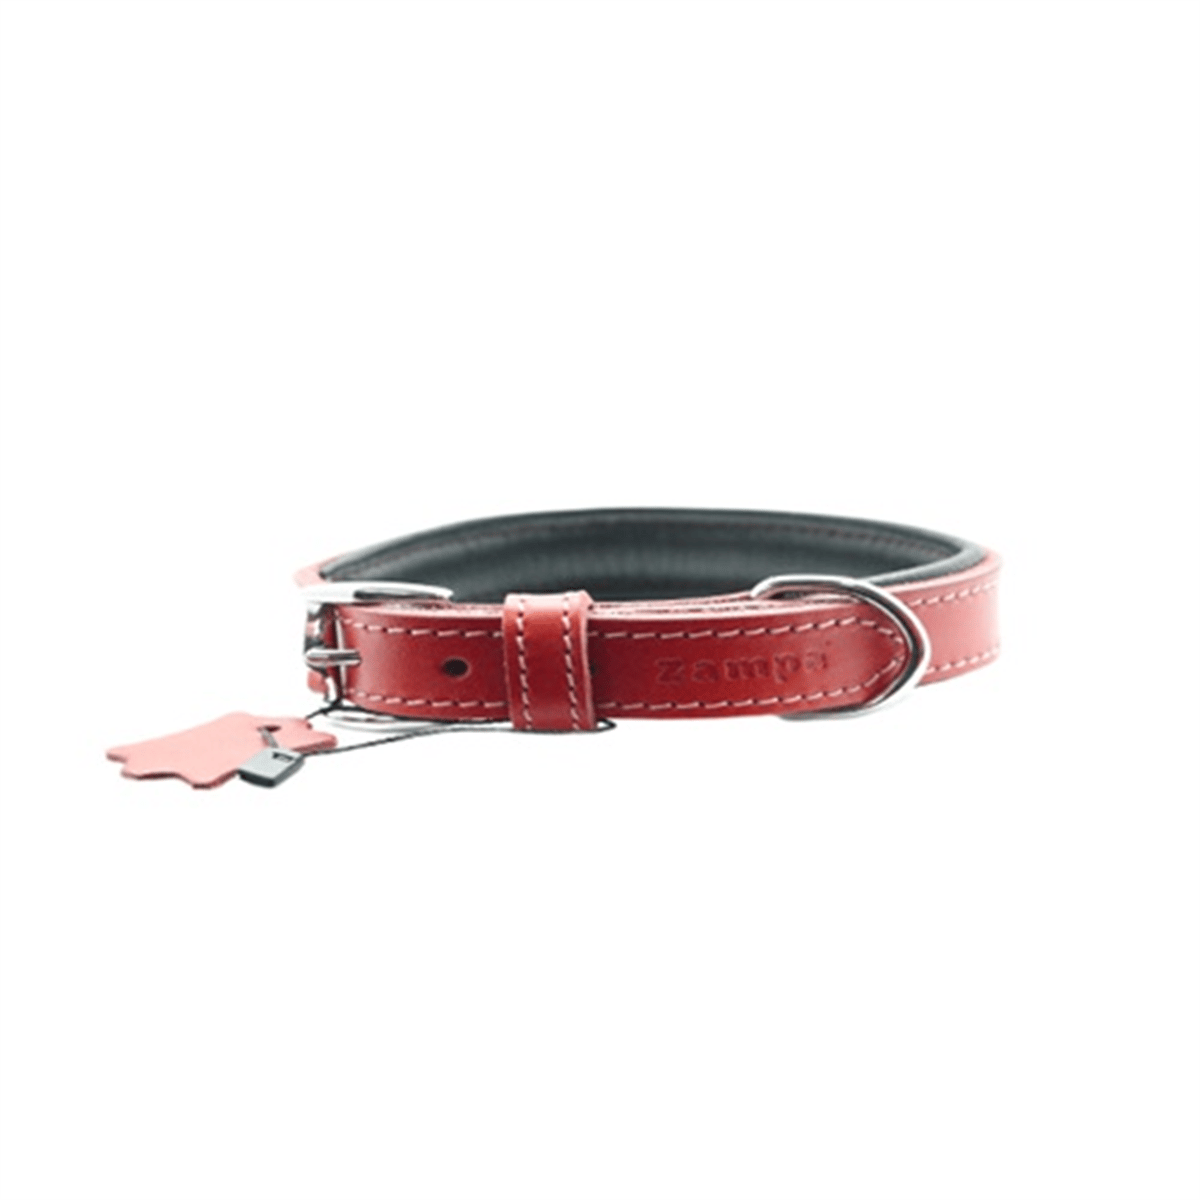 Zampa Yumuşak Dokulu Gerçek Deri Tribeca Köpek Boyun Tasması Kırmızı 2x35 Cm